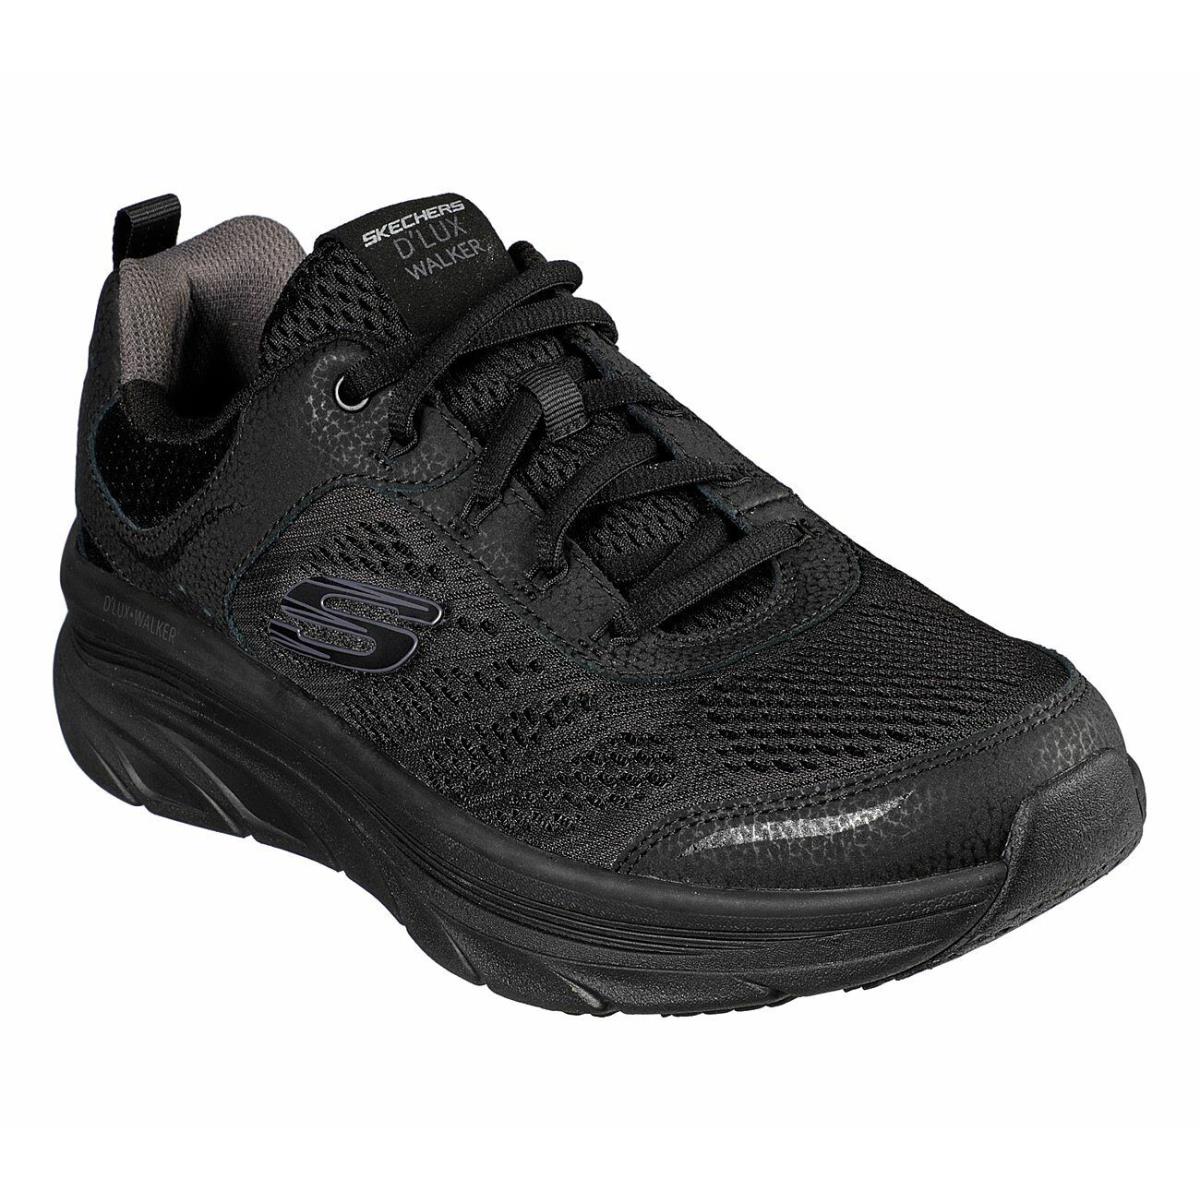 Skechers Black Shoes Men Memory Foam Cushion Sport Comfort Walker Casual 232044